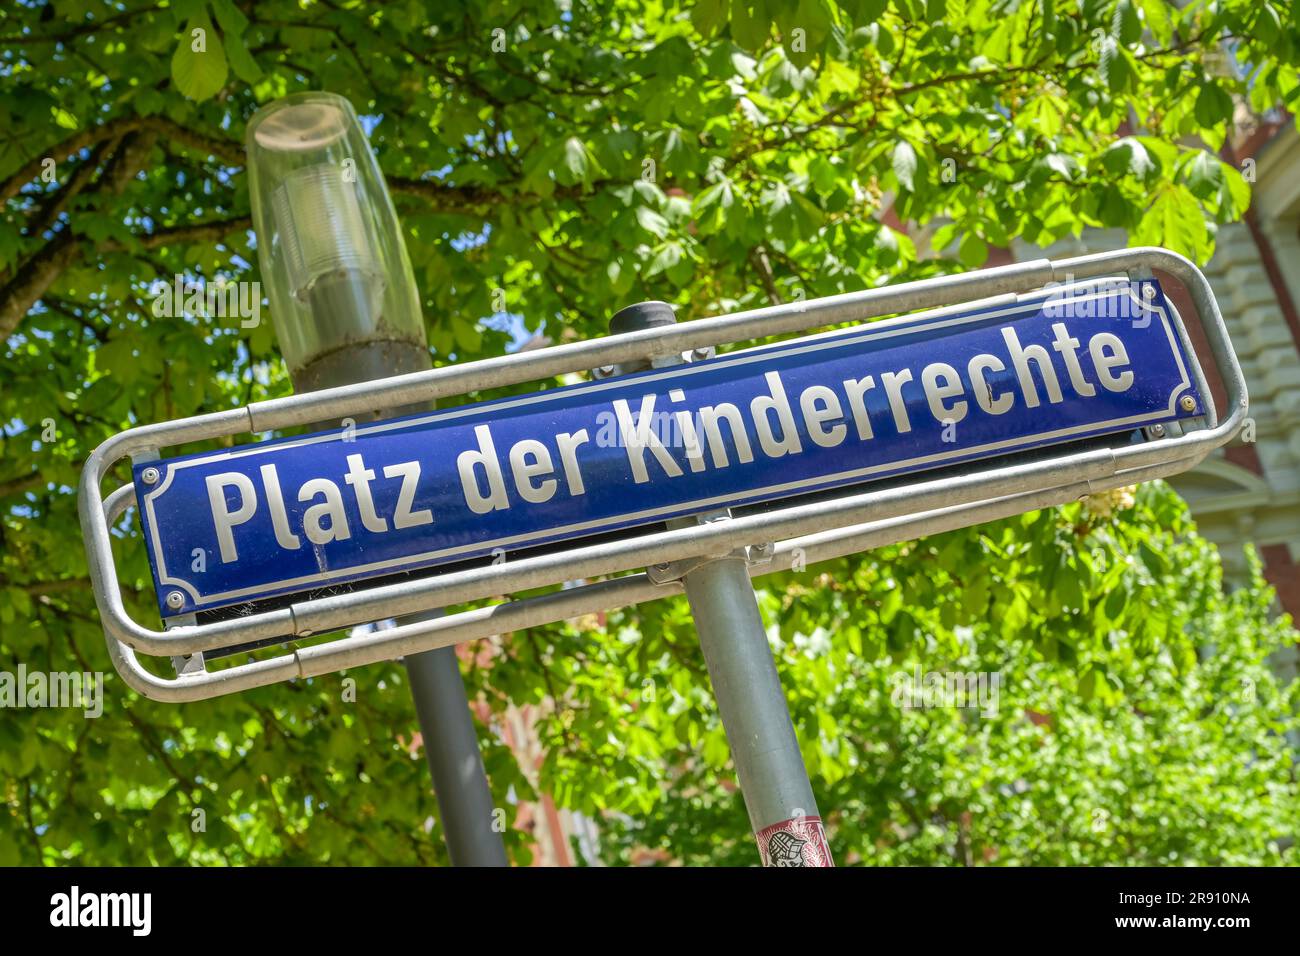 Straßenschild Platz der Kinderrechte, Wiesbaden, Assia, Deutschland Foto Stock